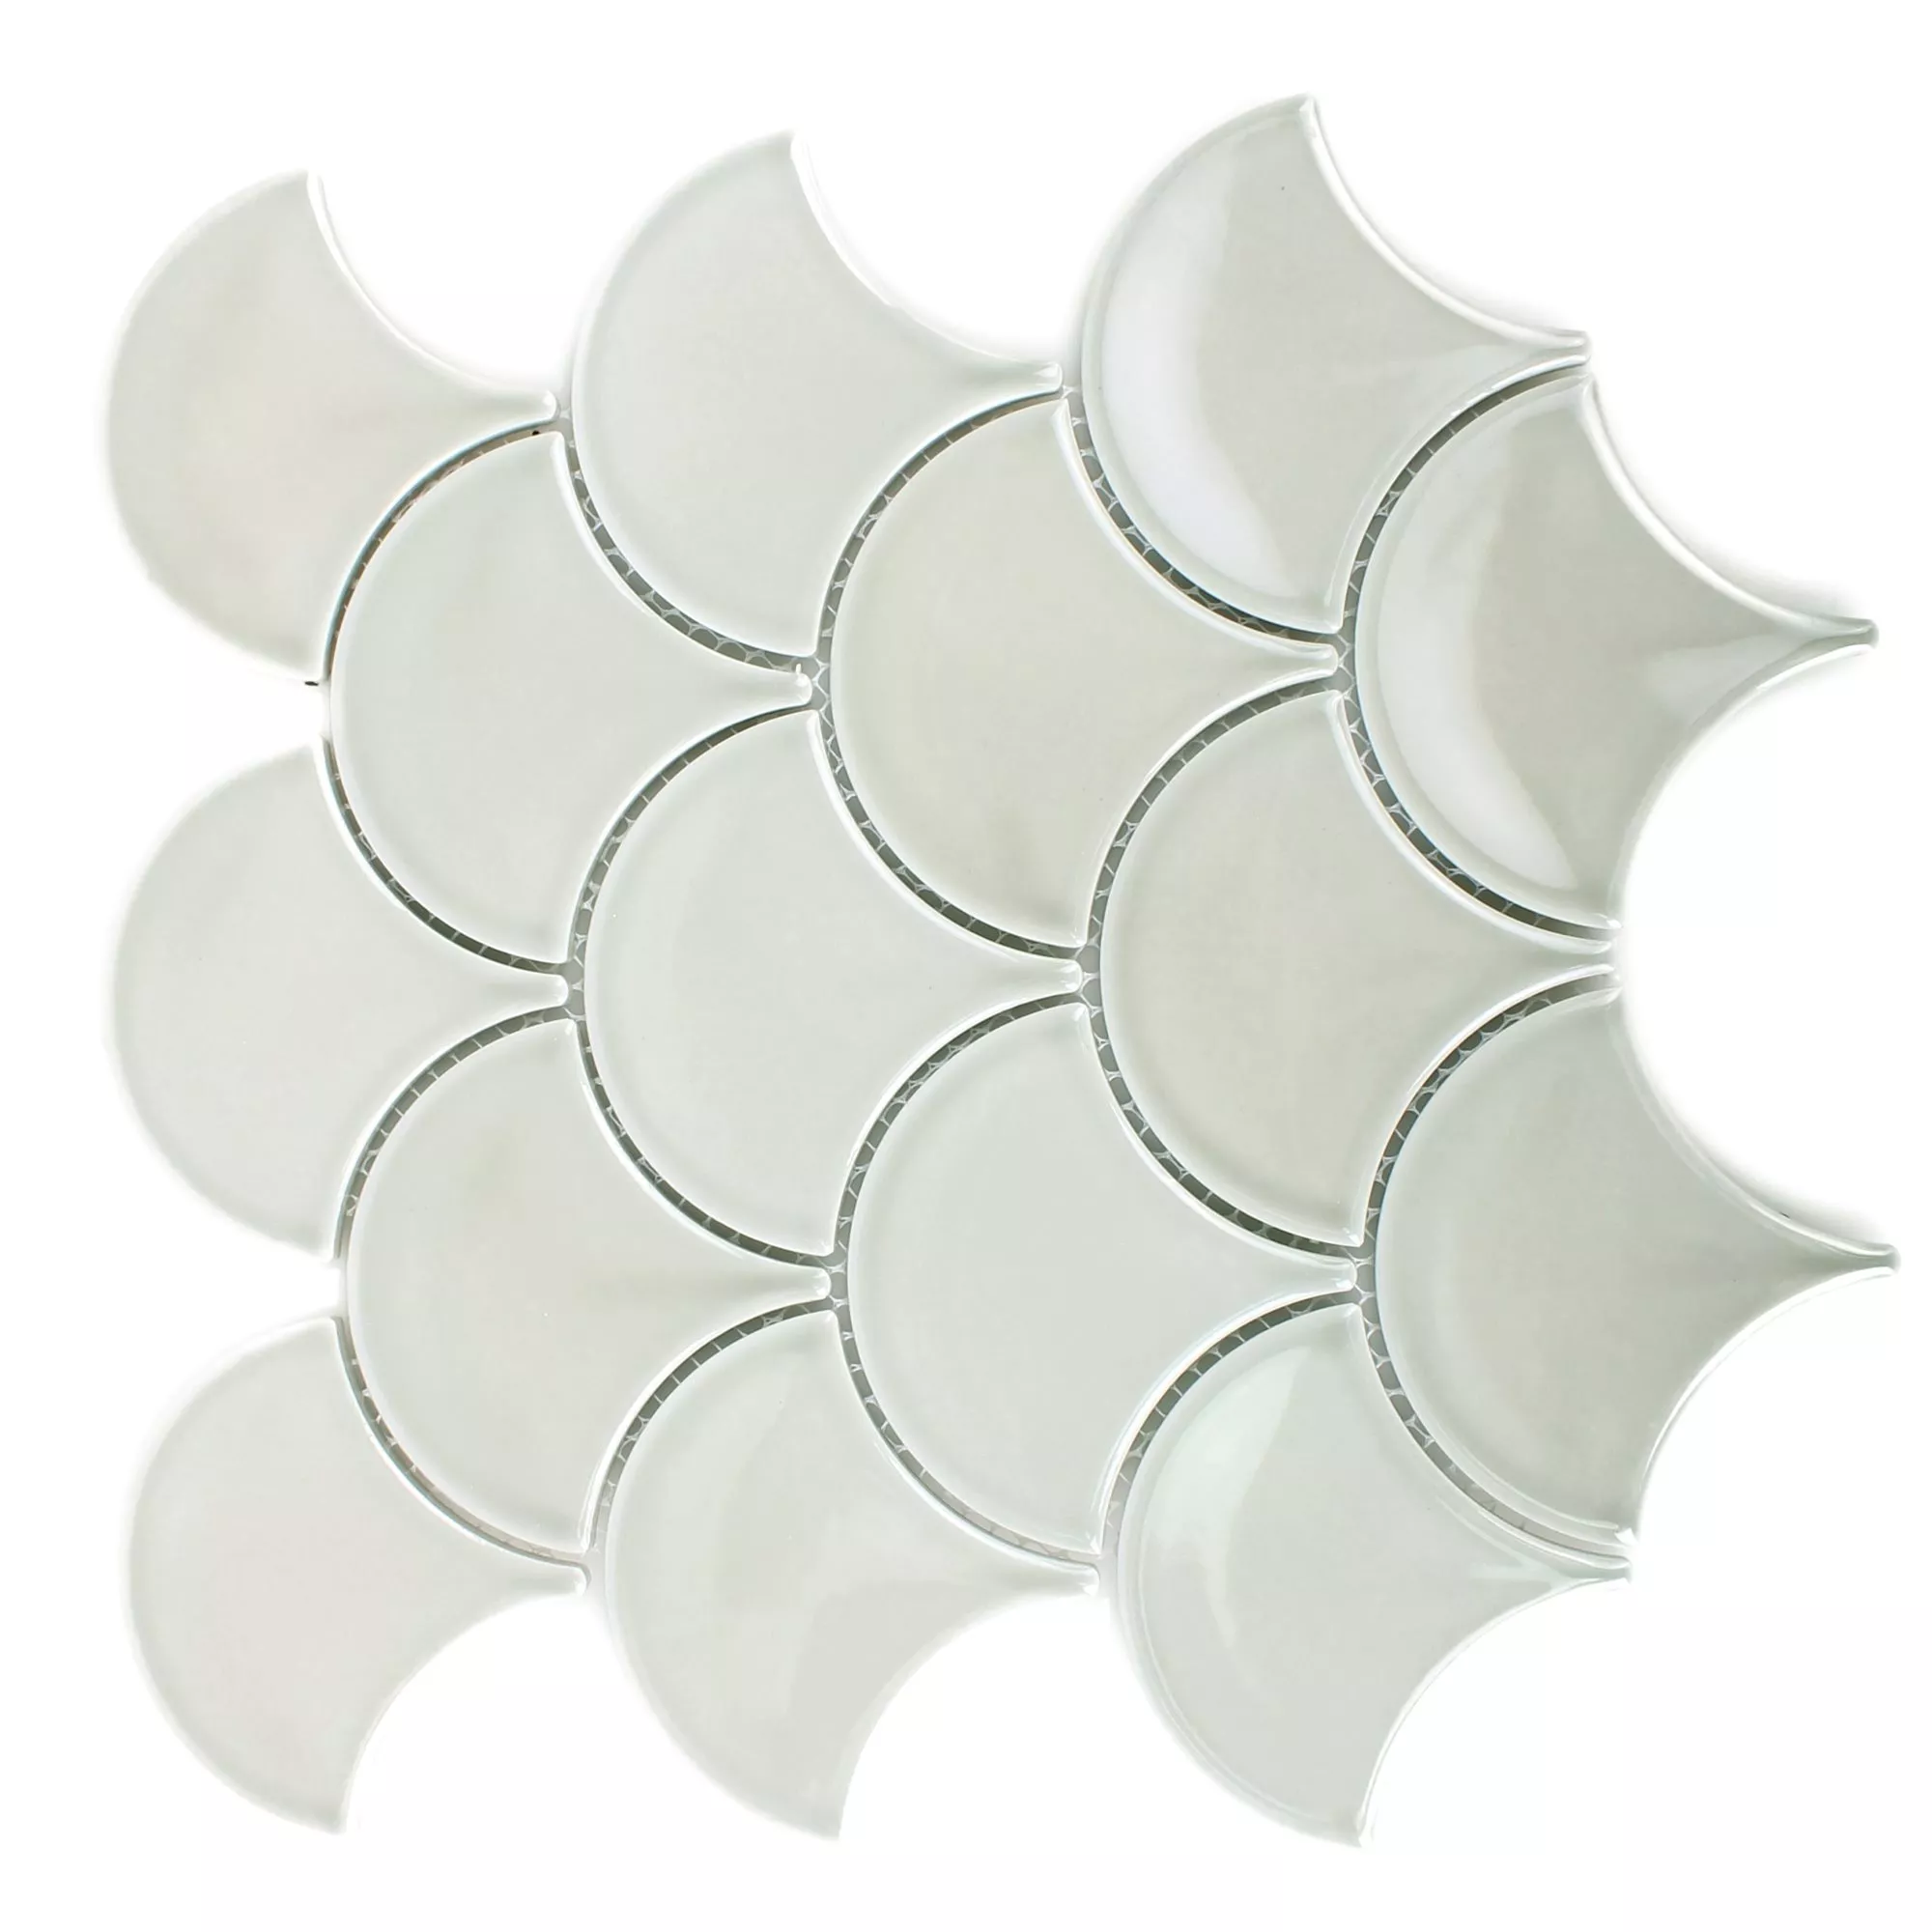 Sample Ceramic Mosaic Tiles Madison Grey